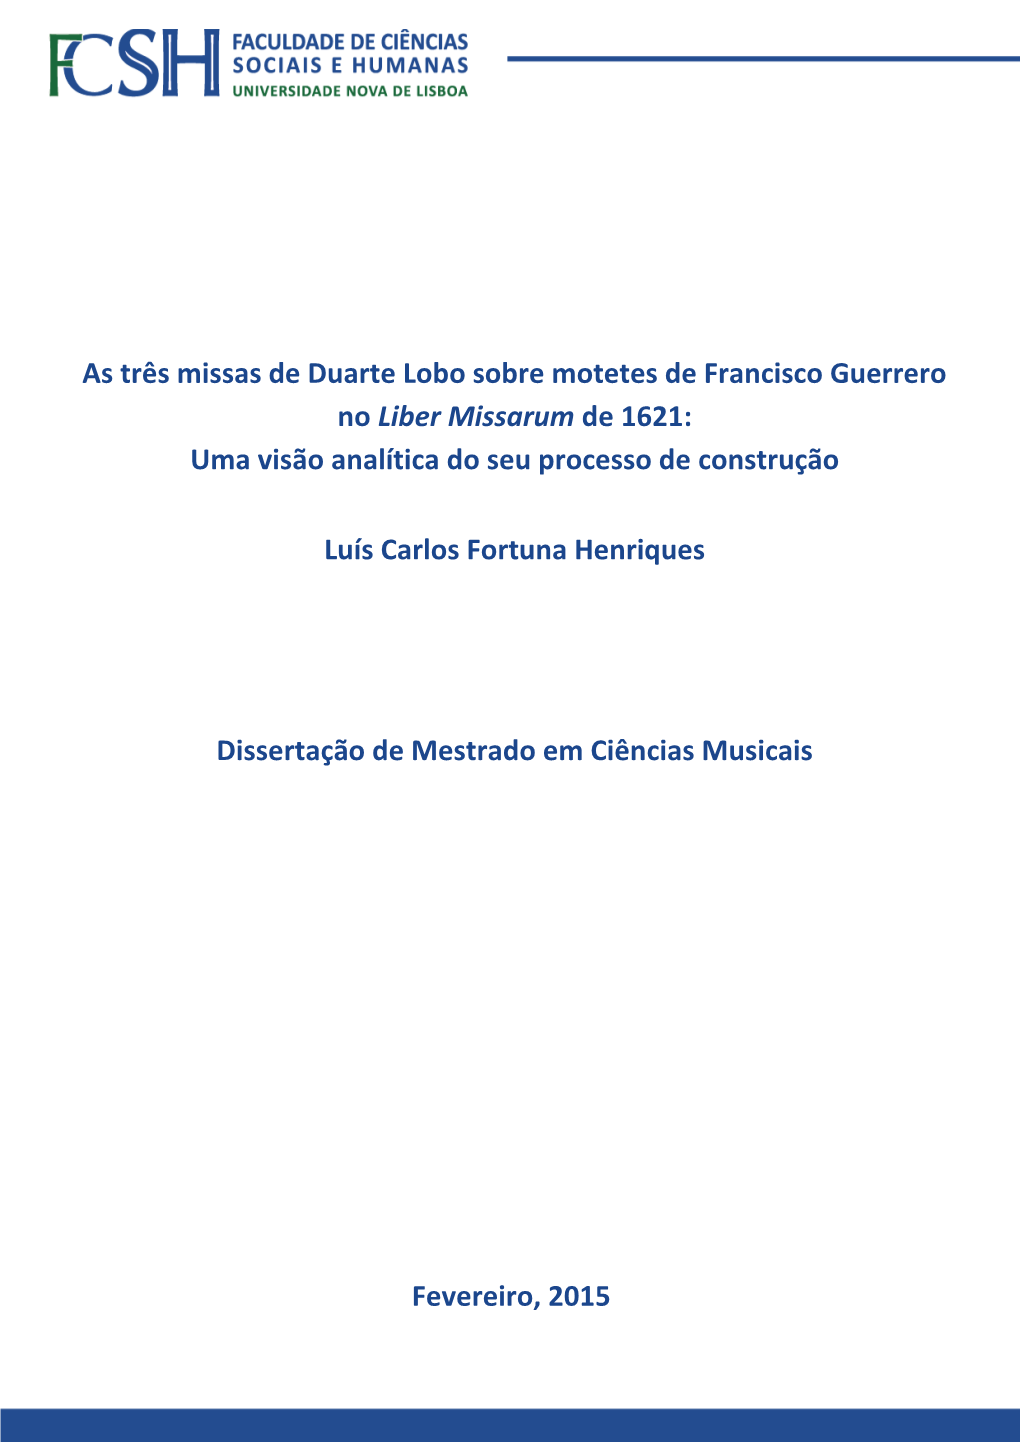 As Três Missas De Duarte Lobo Sobre Motetes De Francisco Guerrero No Liber Missarum De 1621: Uma Visão Analítica Do Seu Processo De Construção